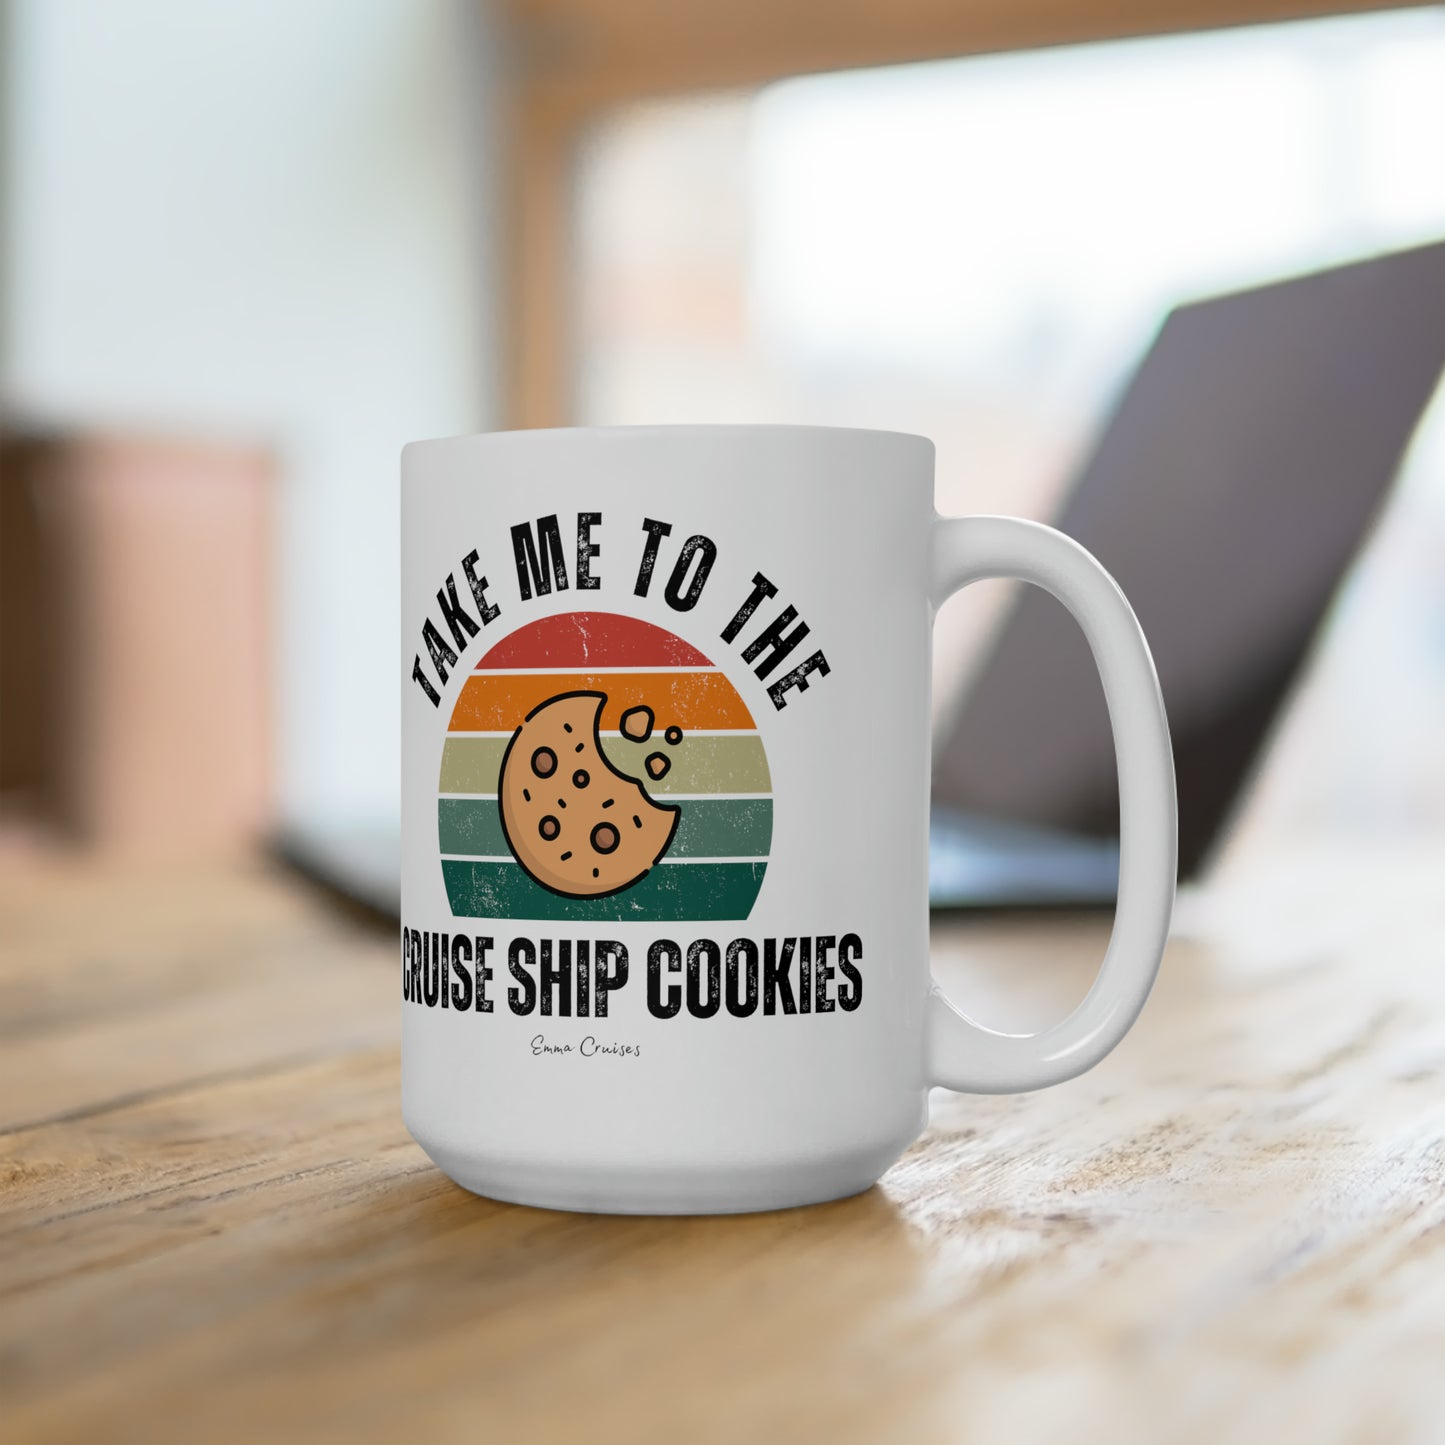 Take Me to the Cruise Ship Cookies - Ceramic Mug